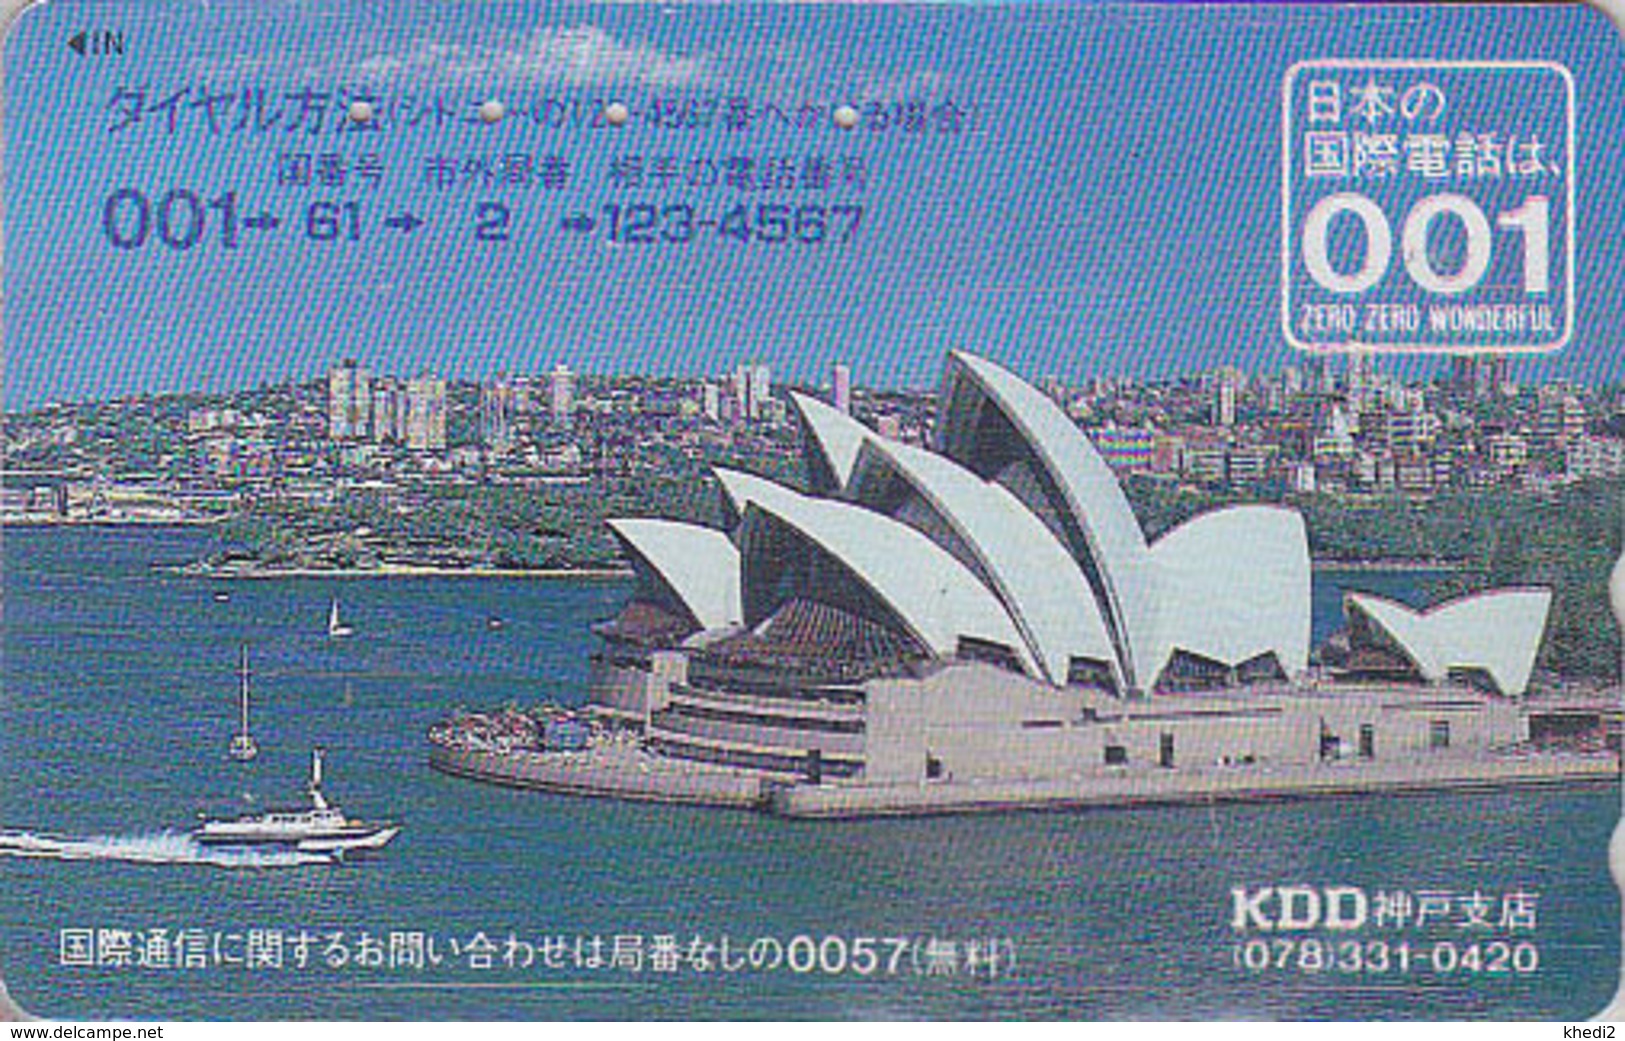 Télécarte Japon / 110-011 - Site AUSTRALIE KDD 001 - Musique - OPERA DE SYDNEY - AUSTRALIA Japan Phonecard - 155 - Japon